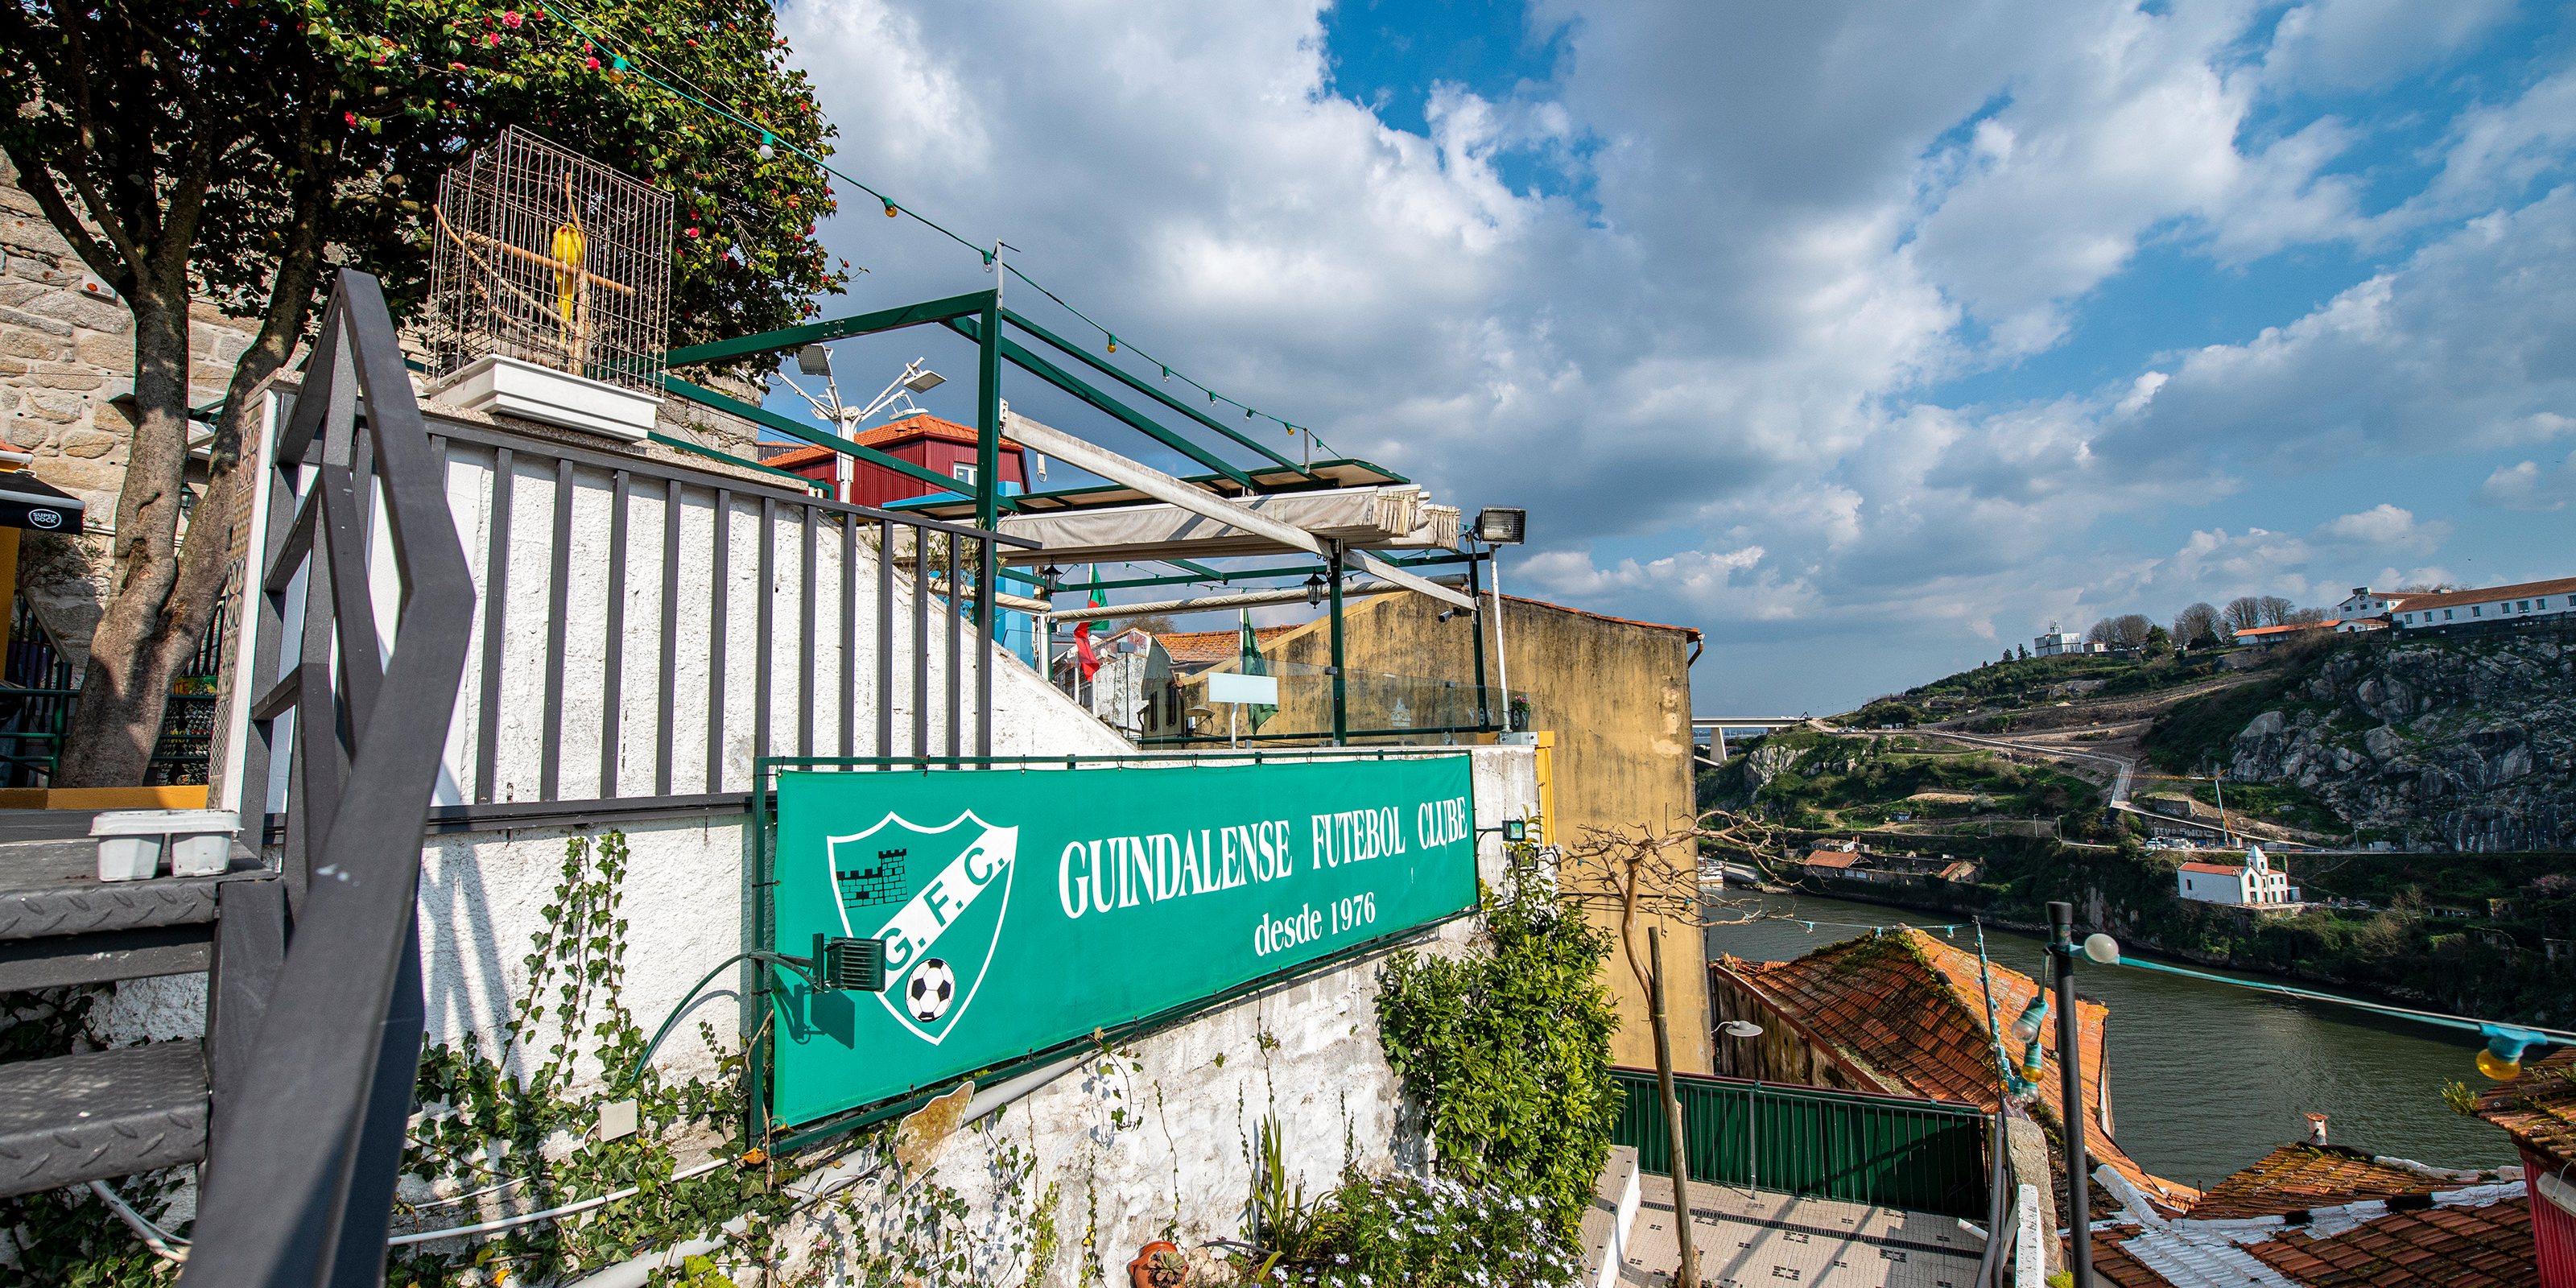 Conhecido pela sua vista sobre o Douro, a esplanada do Guindalense tornou-se famosa e muito concorrida nos últimos anos